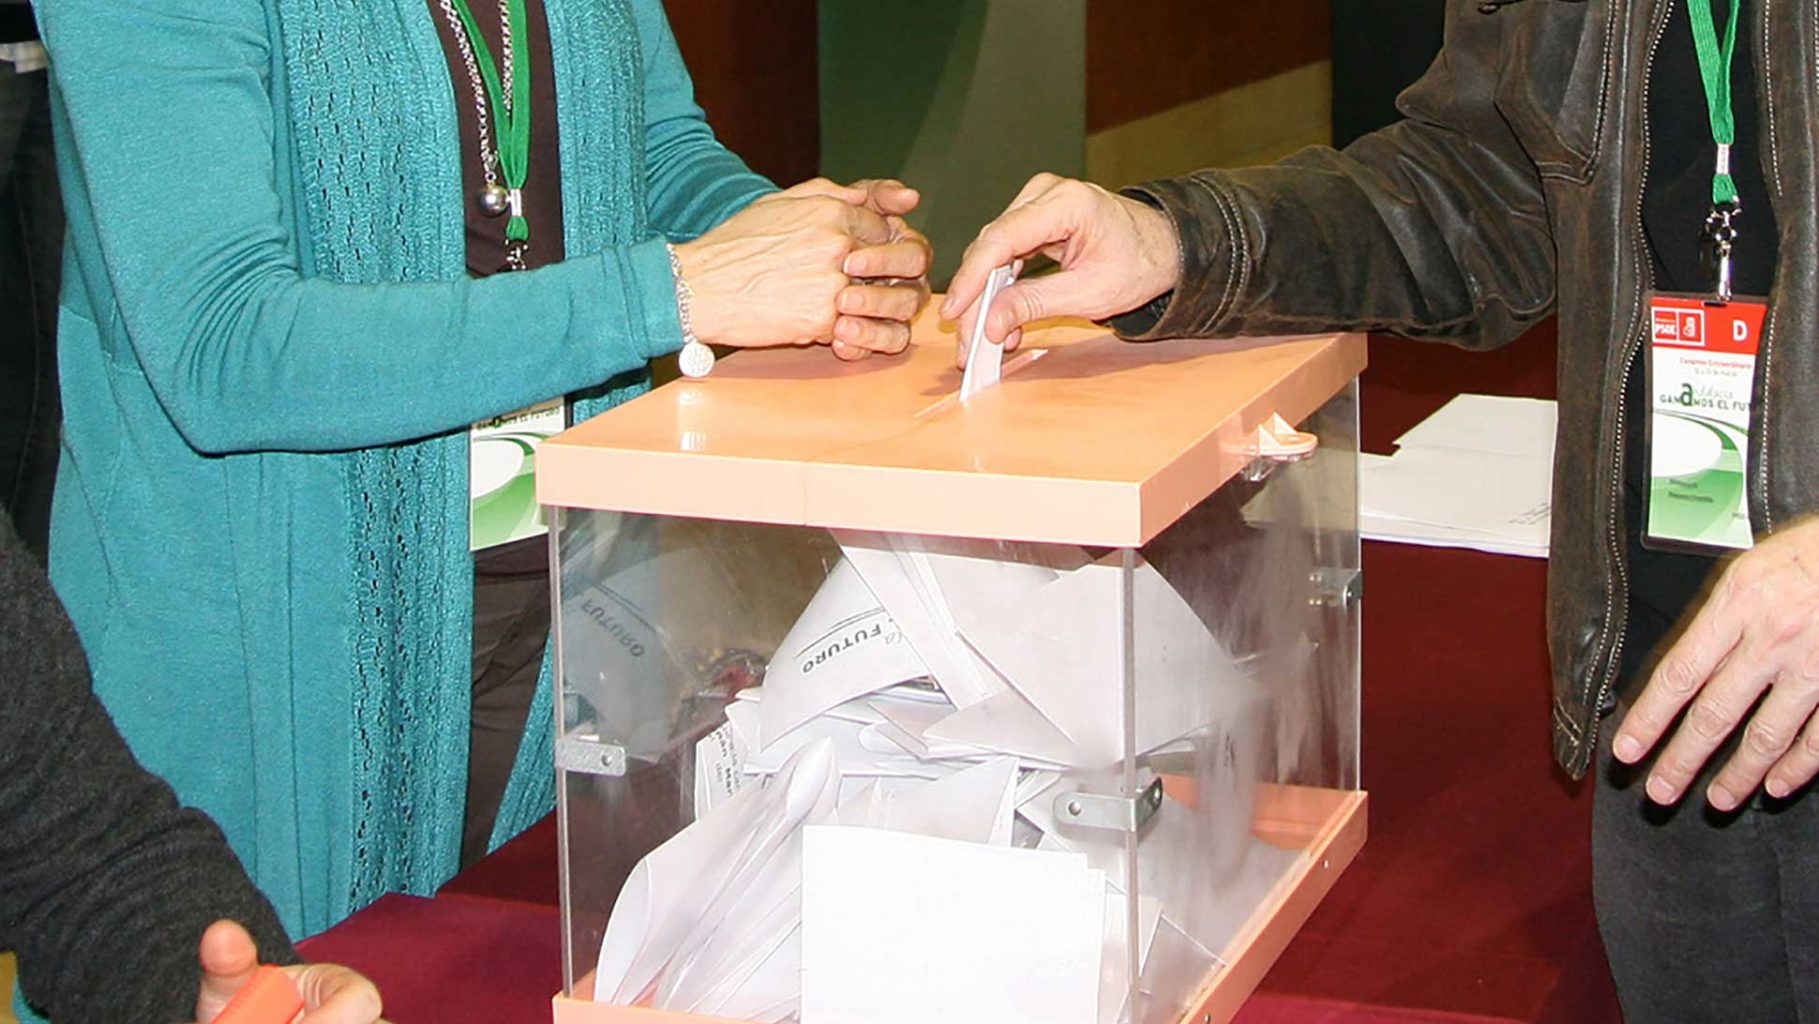 centros de votación